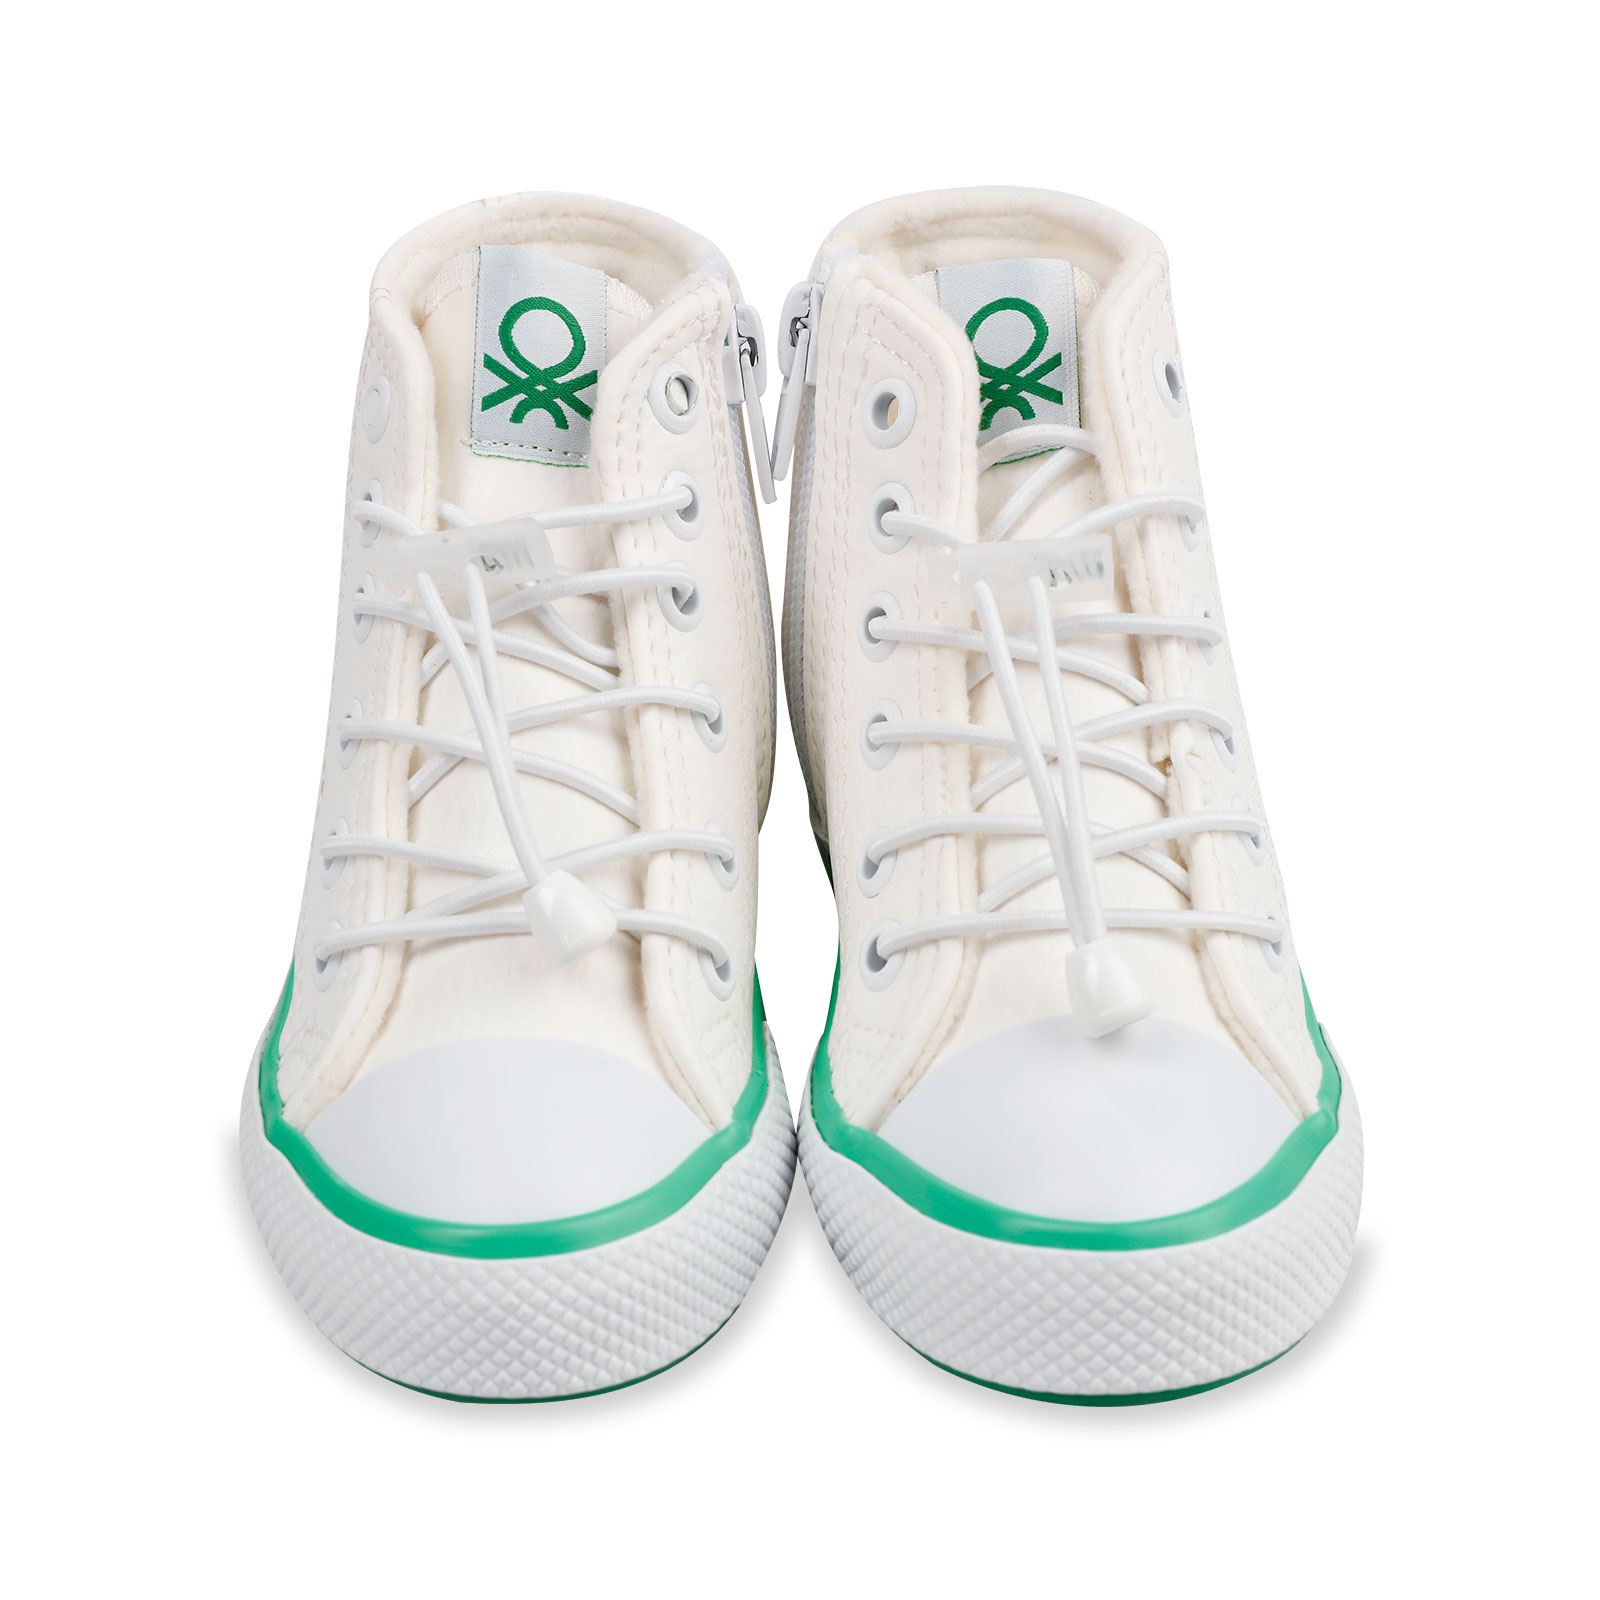 Benetton Erkek Çocuk Spor Ayakkabı 26-30 Numara Beyaz